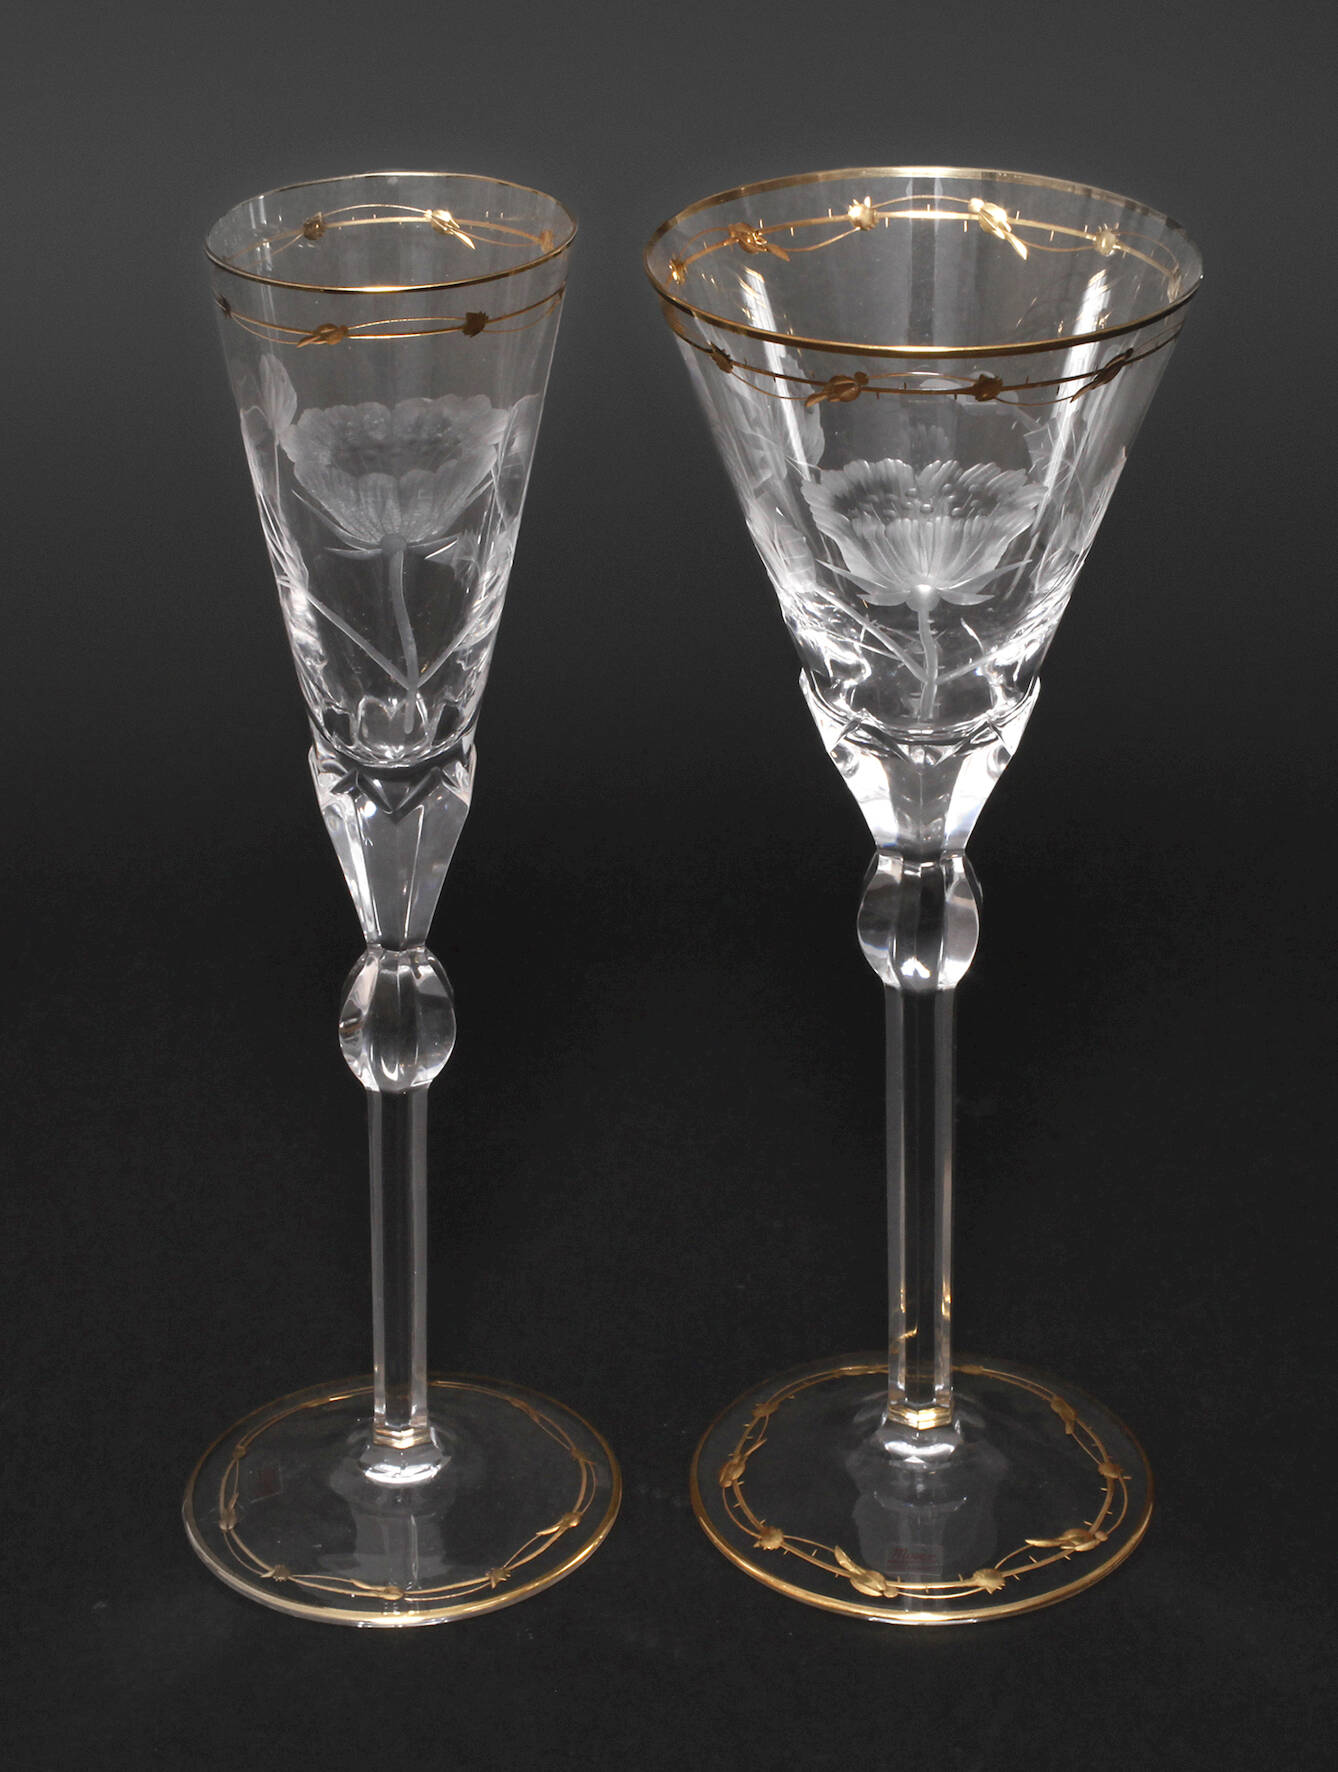 Moser Karlsbad zwei Gläser aus der Serie "Rose"